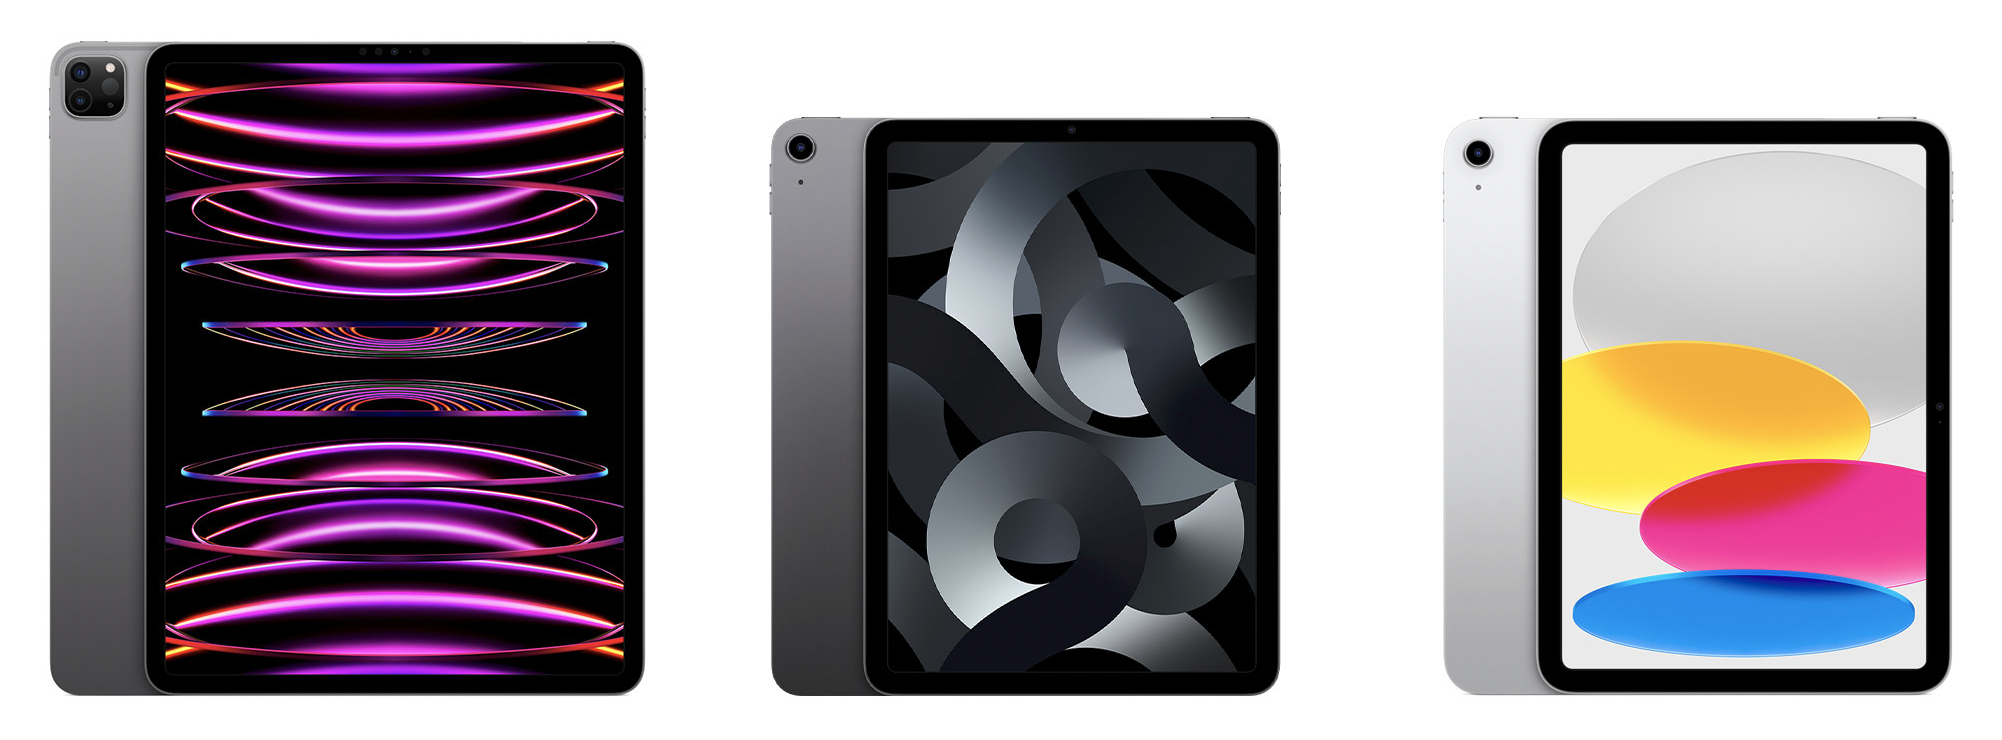 Brouwerij Beraadslagen Jaar Which iPad Is Best for You in 2023? - The Mac Security Blog